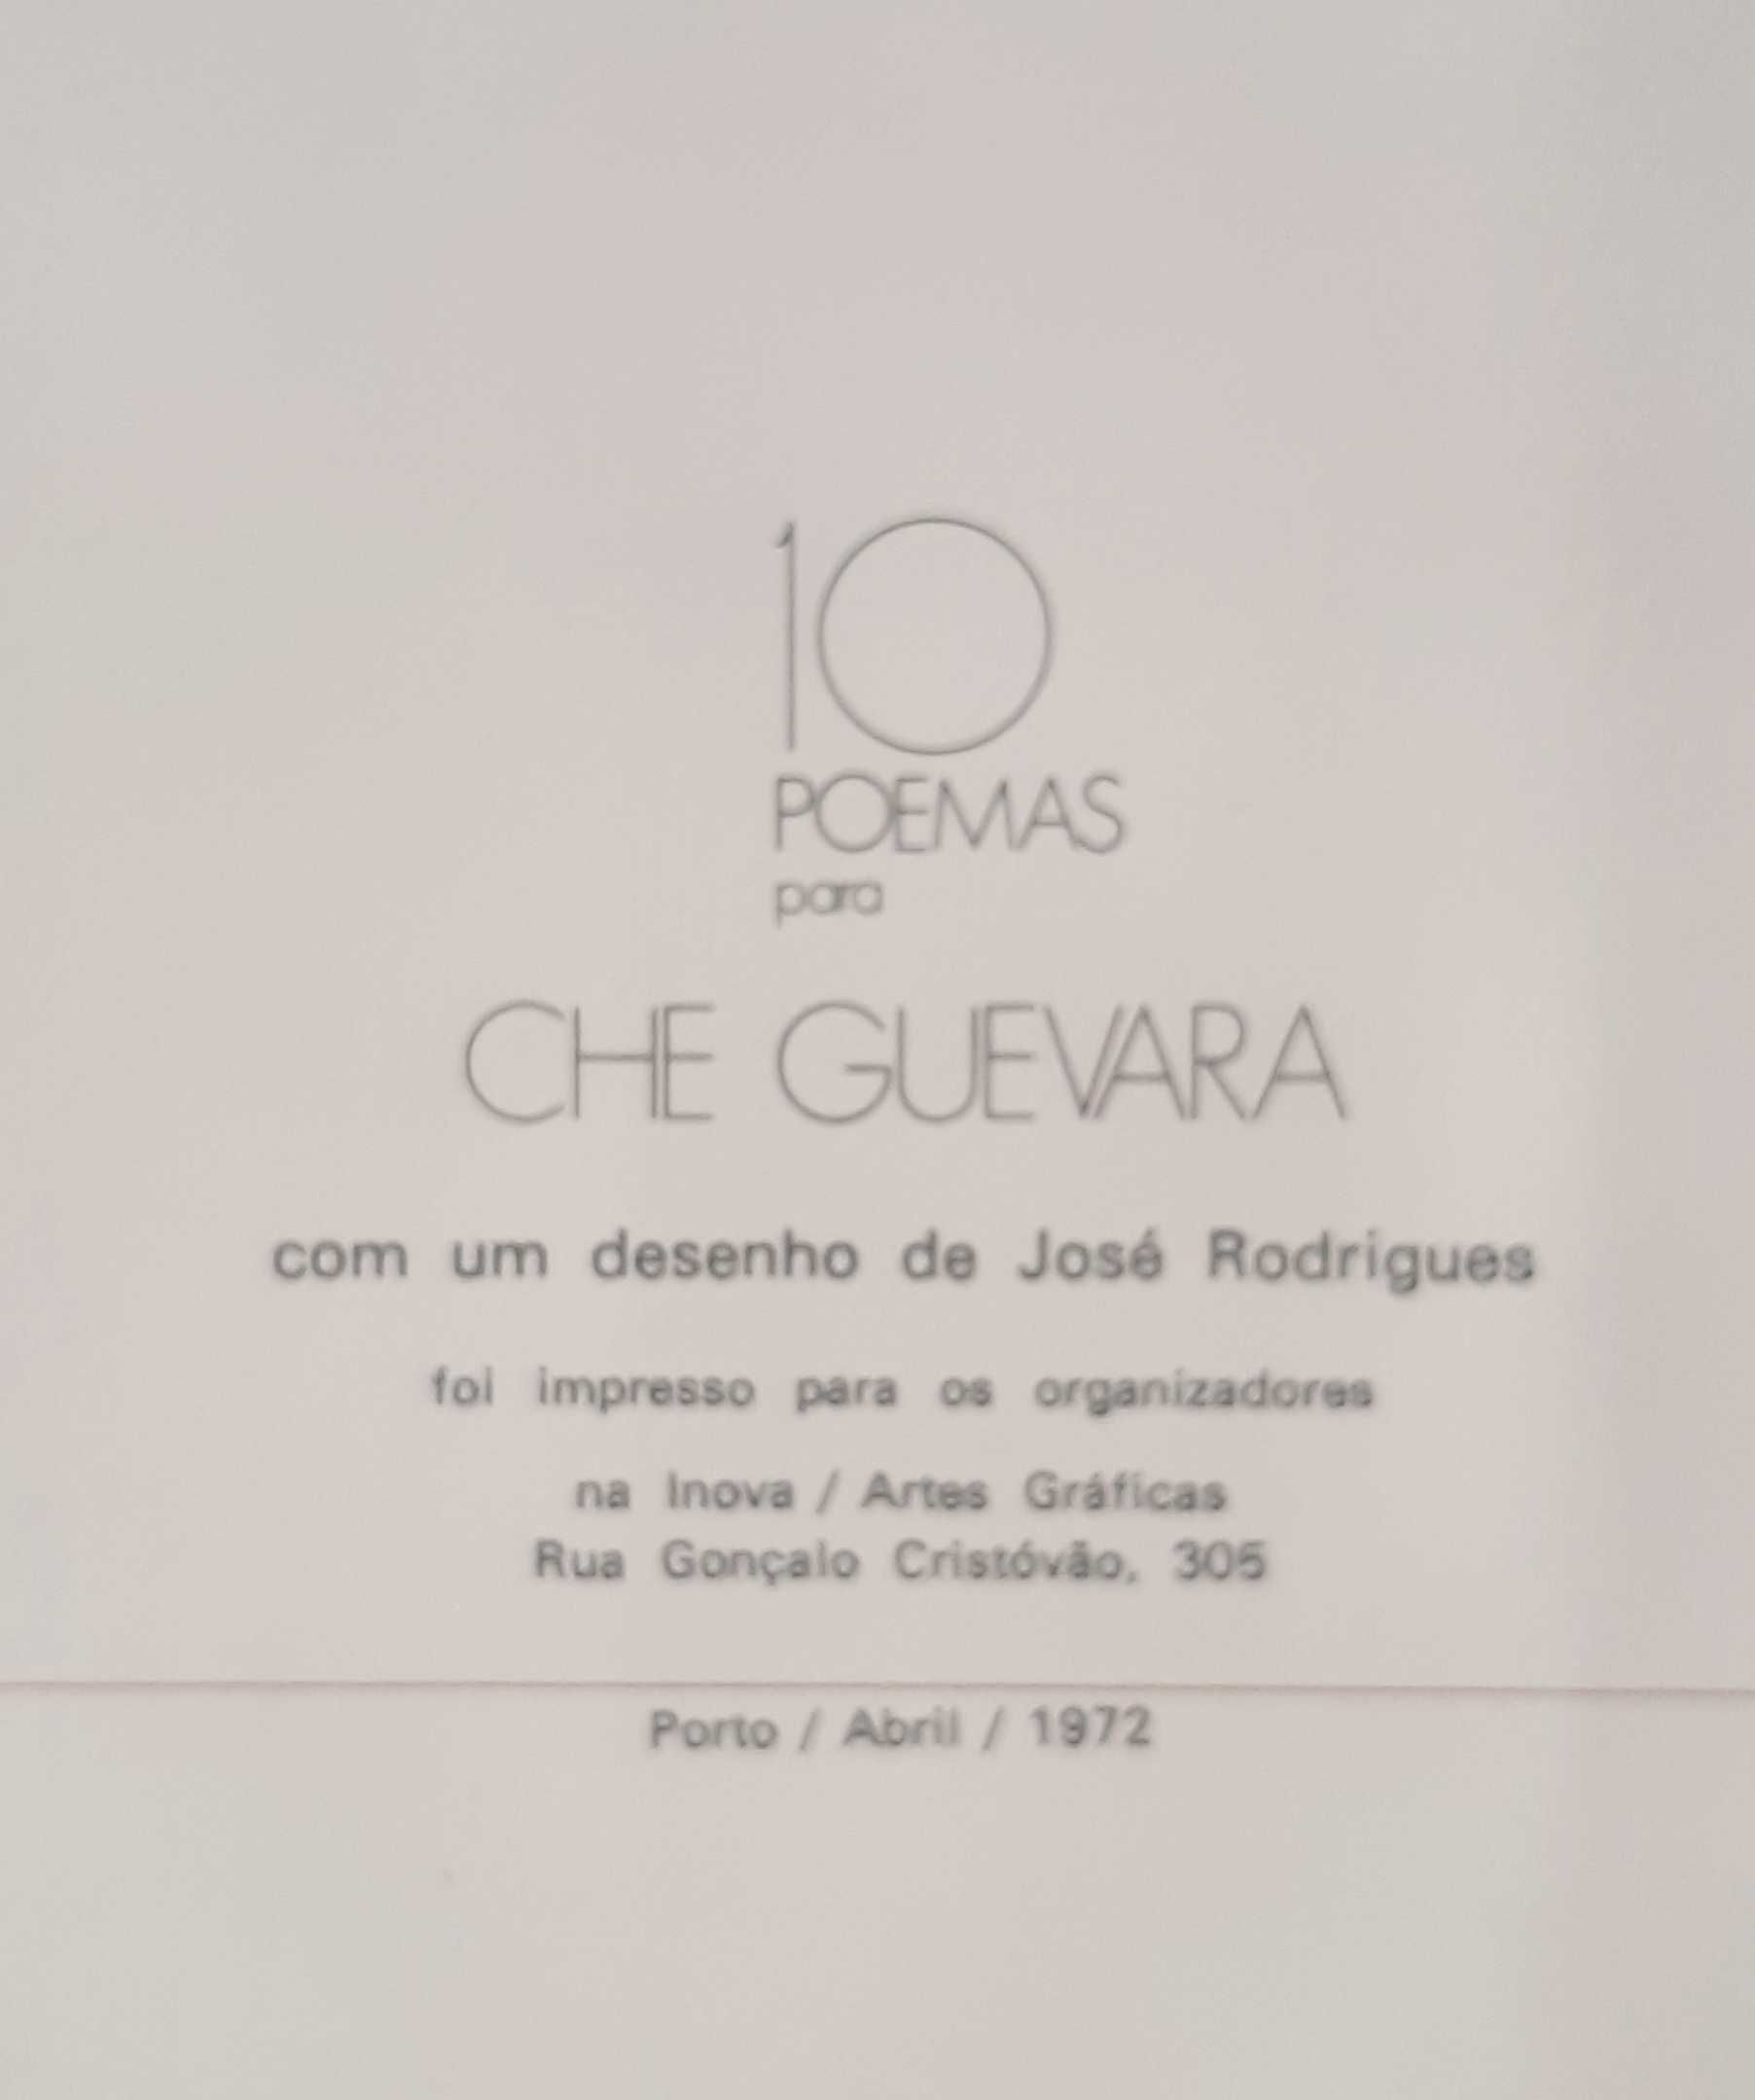 10 Poemas para Che Guevara